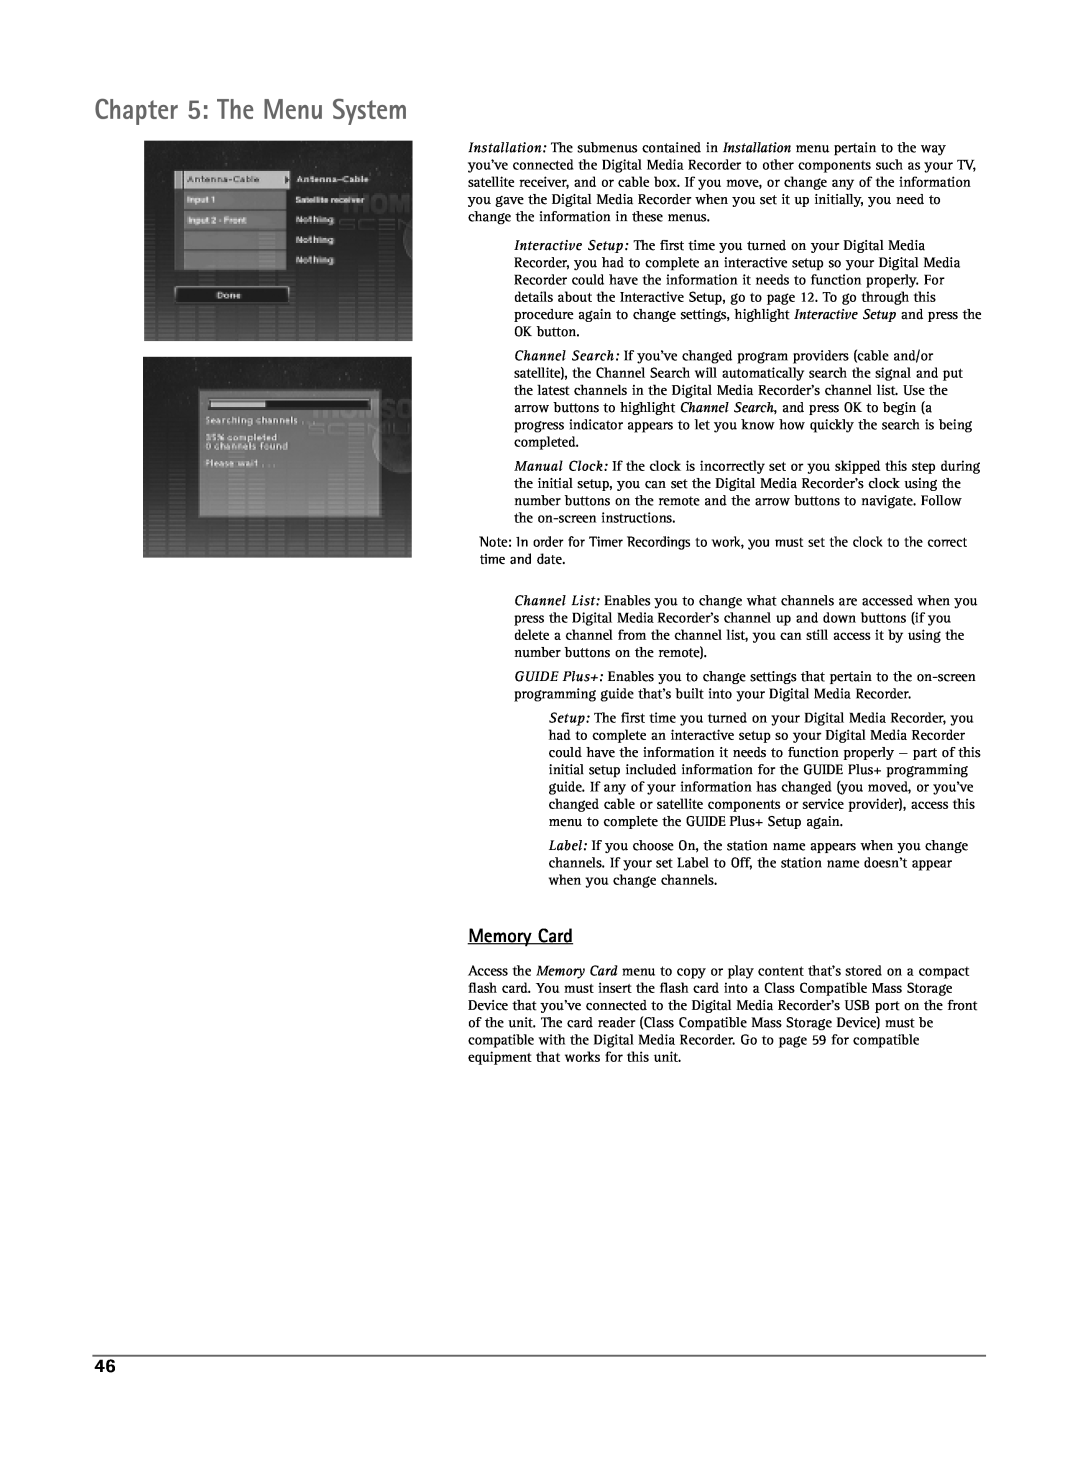 RCA DRS7000N manual The Menu System, Memory Card 